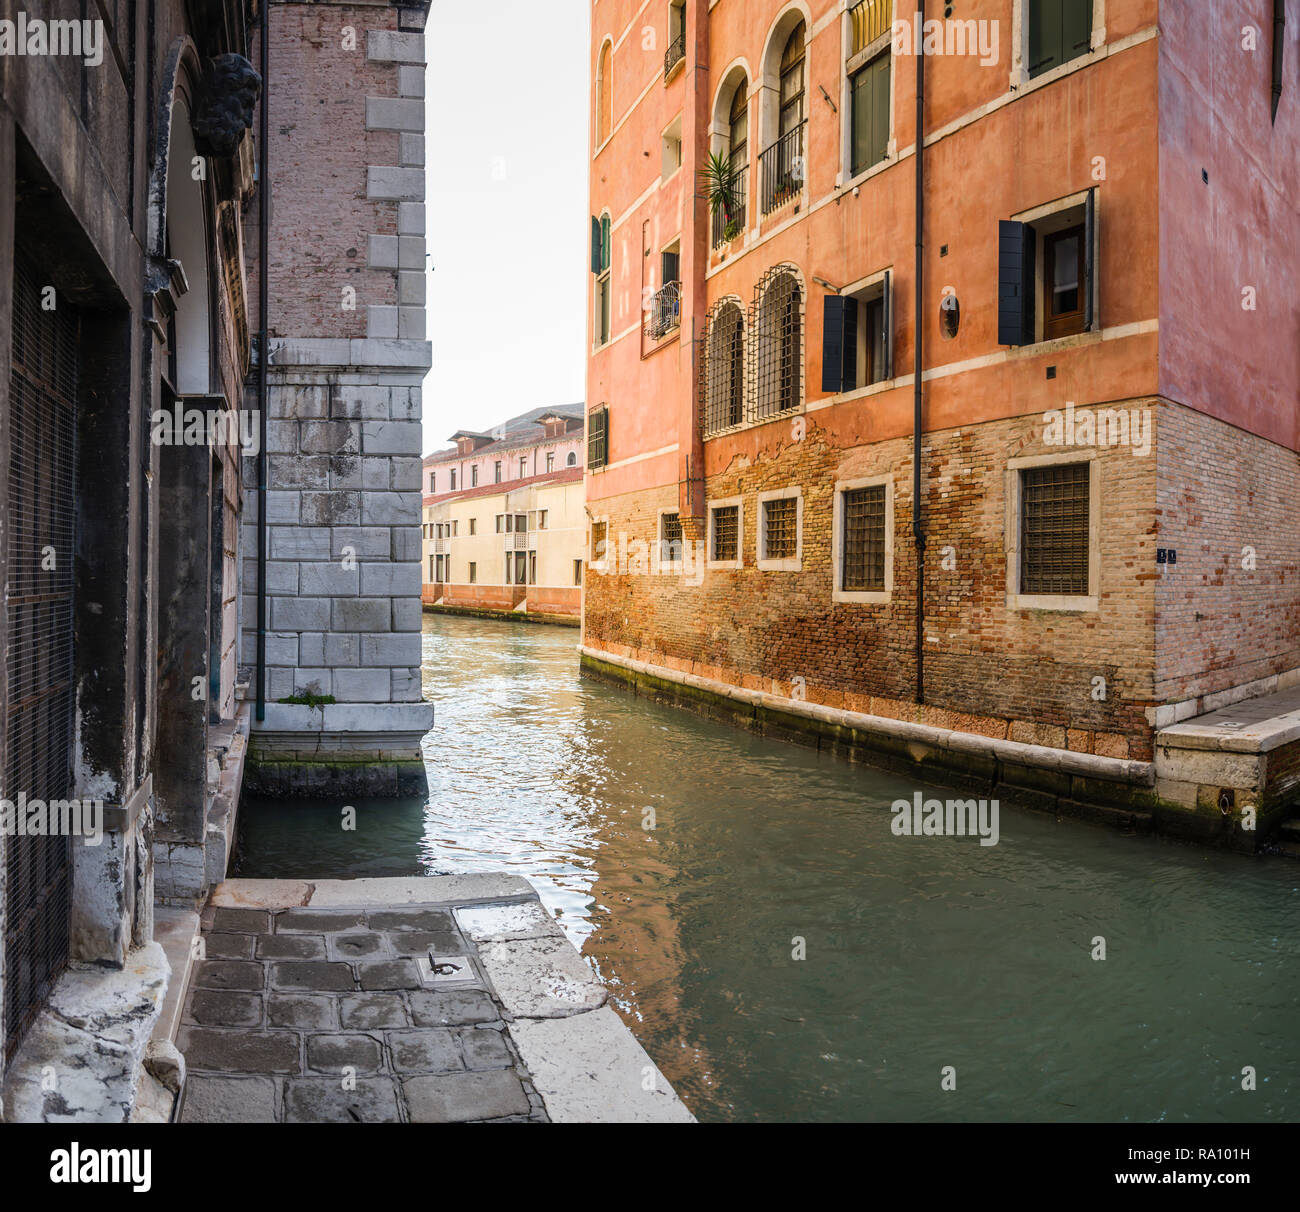 Canale laterale in segreto a Venezia, Italia. Foto Stock